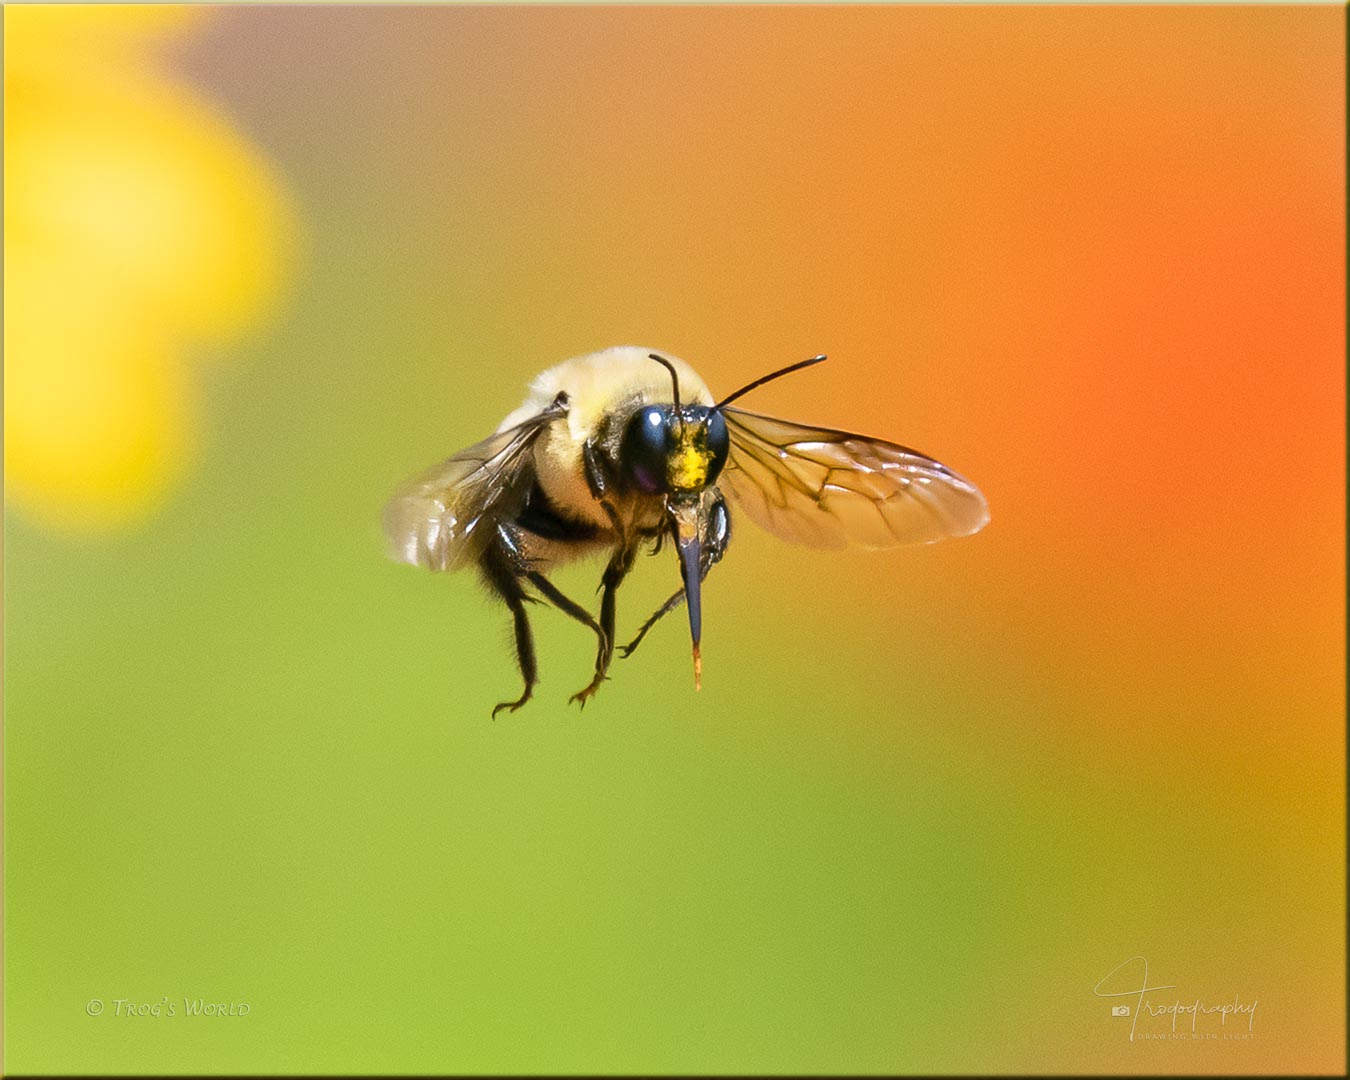 Bumblebee among the flowers